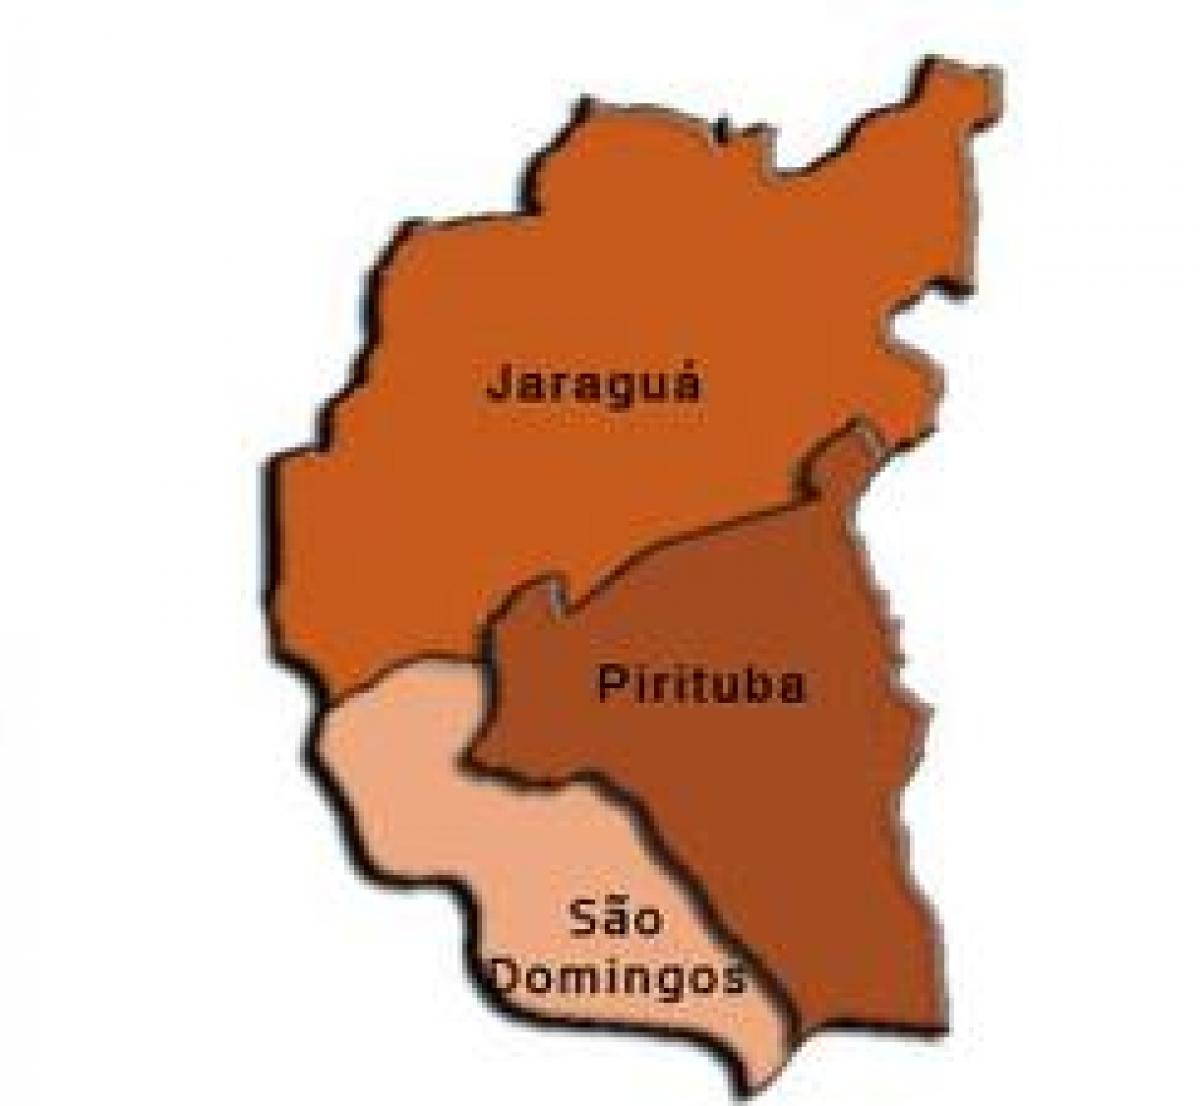 Mapa Pirituba-Jaraguá pod-prefektura